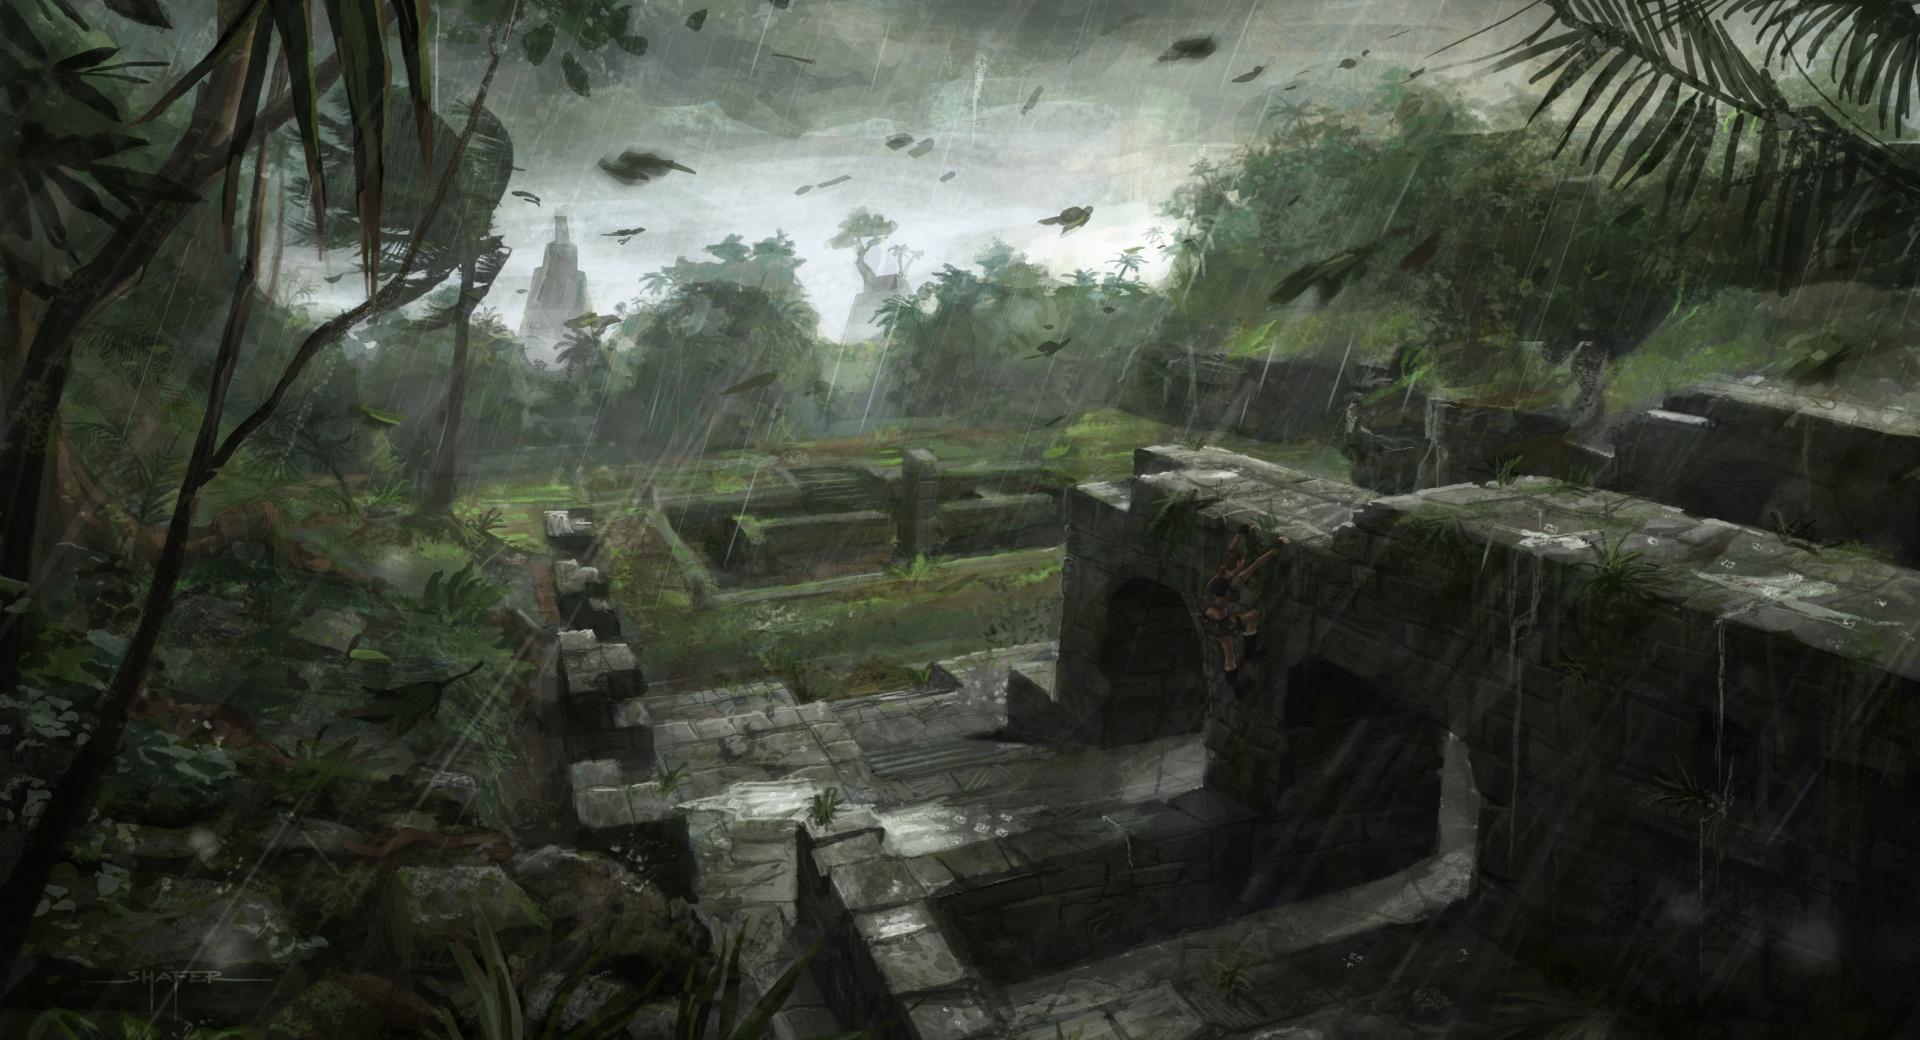 Tomb Raider Underworld Art at 1024 x 1024 iPad size wallpapers HD quality